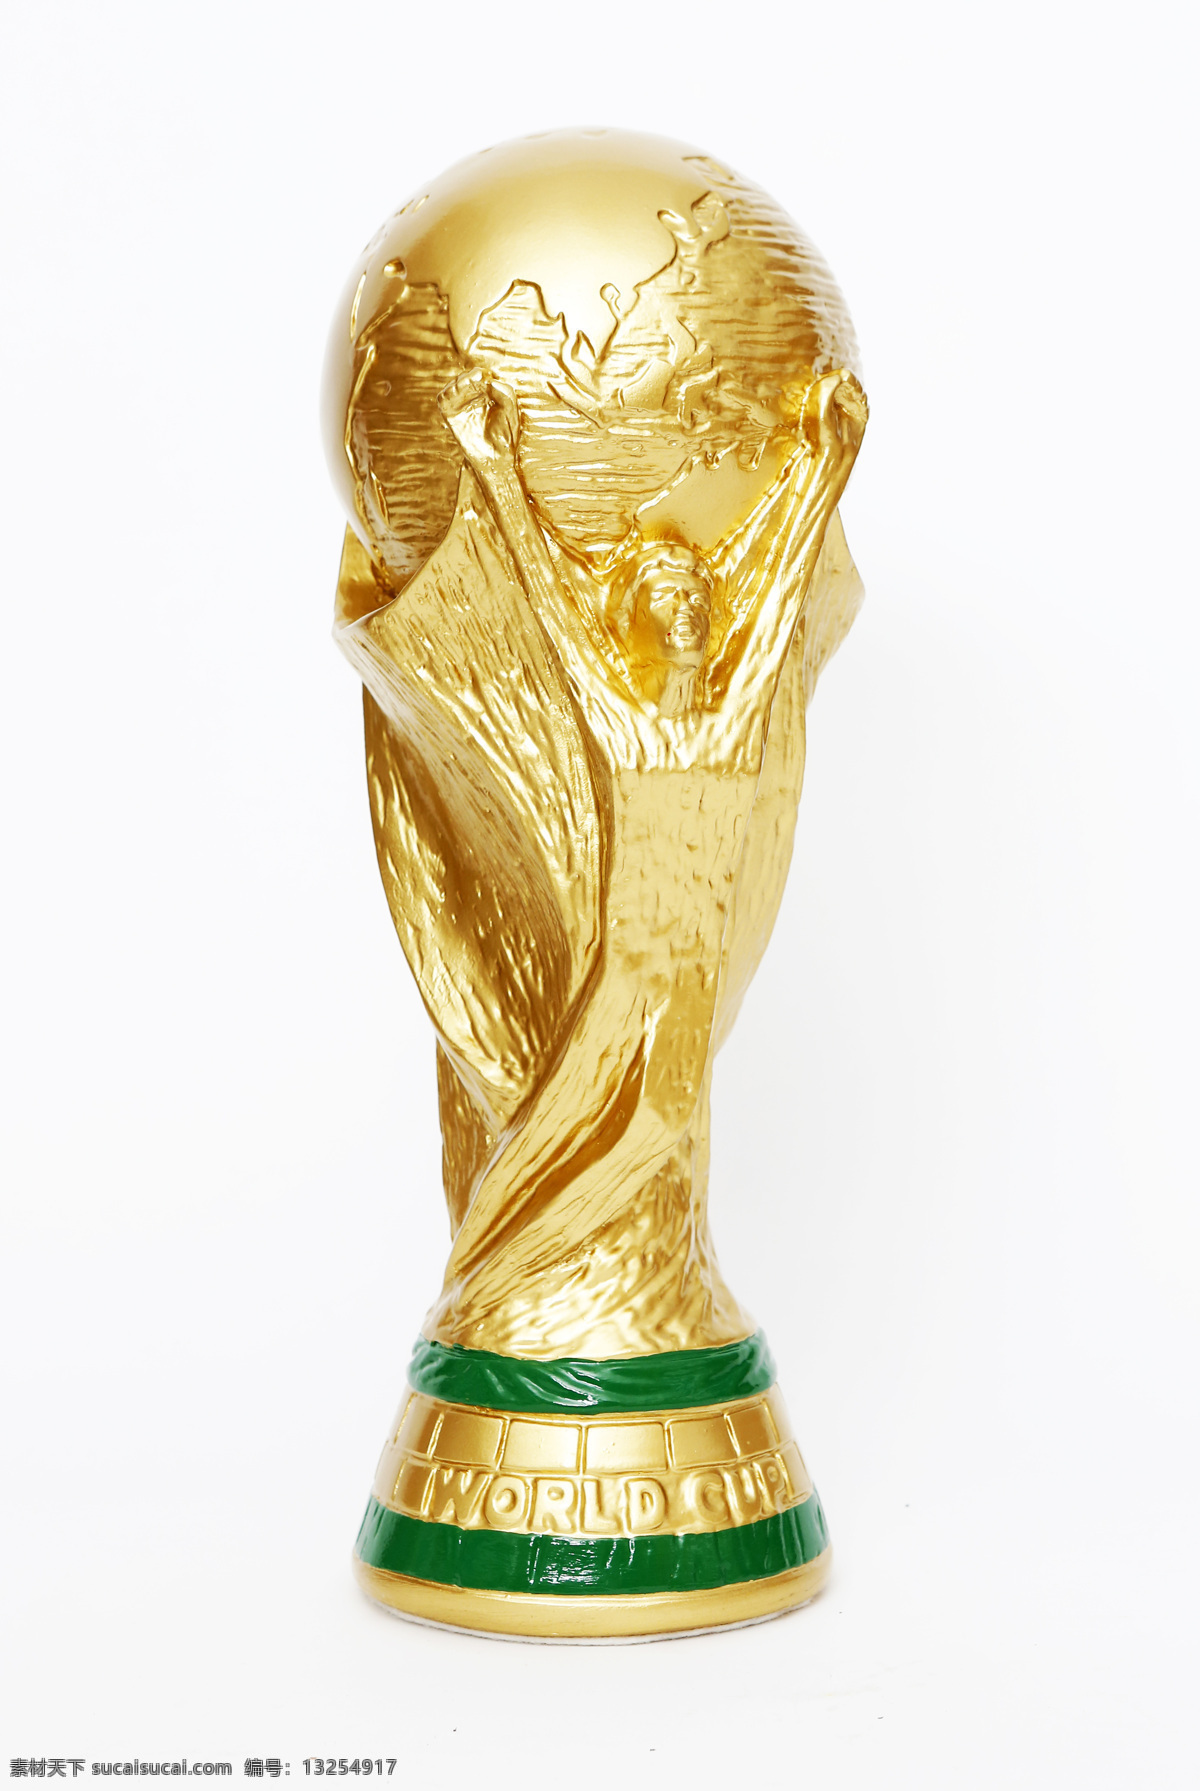 巴西世界杯 巴西 世界杯 2014 大力神杯 足球 赛场 足球场 竞技 运动 体育 健身 体育运动 生活百科 体育用品